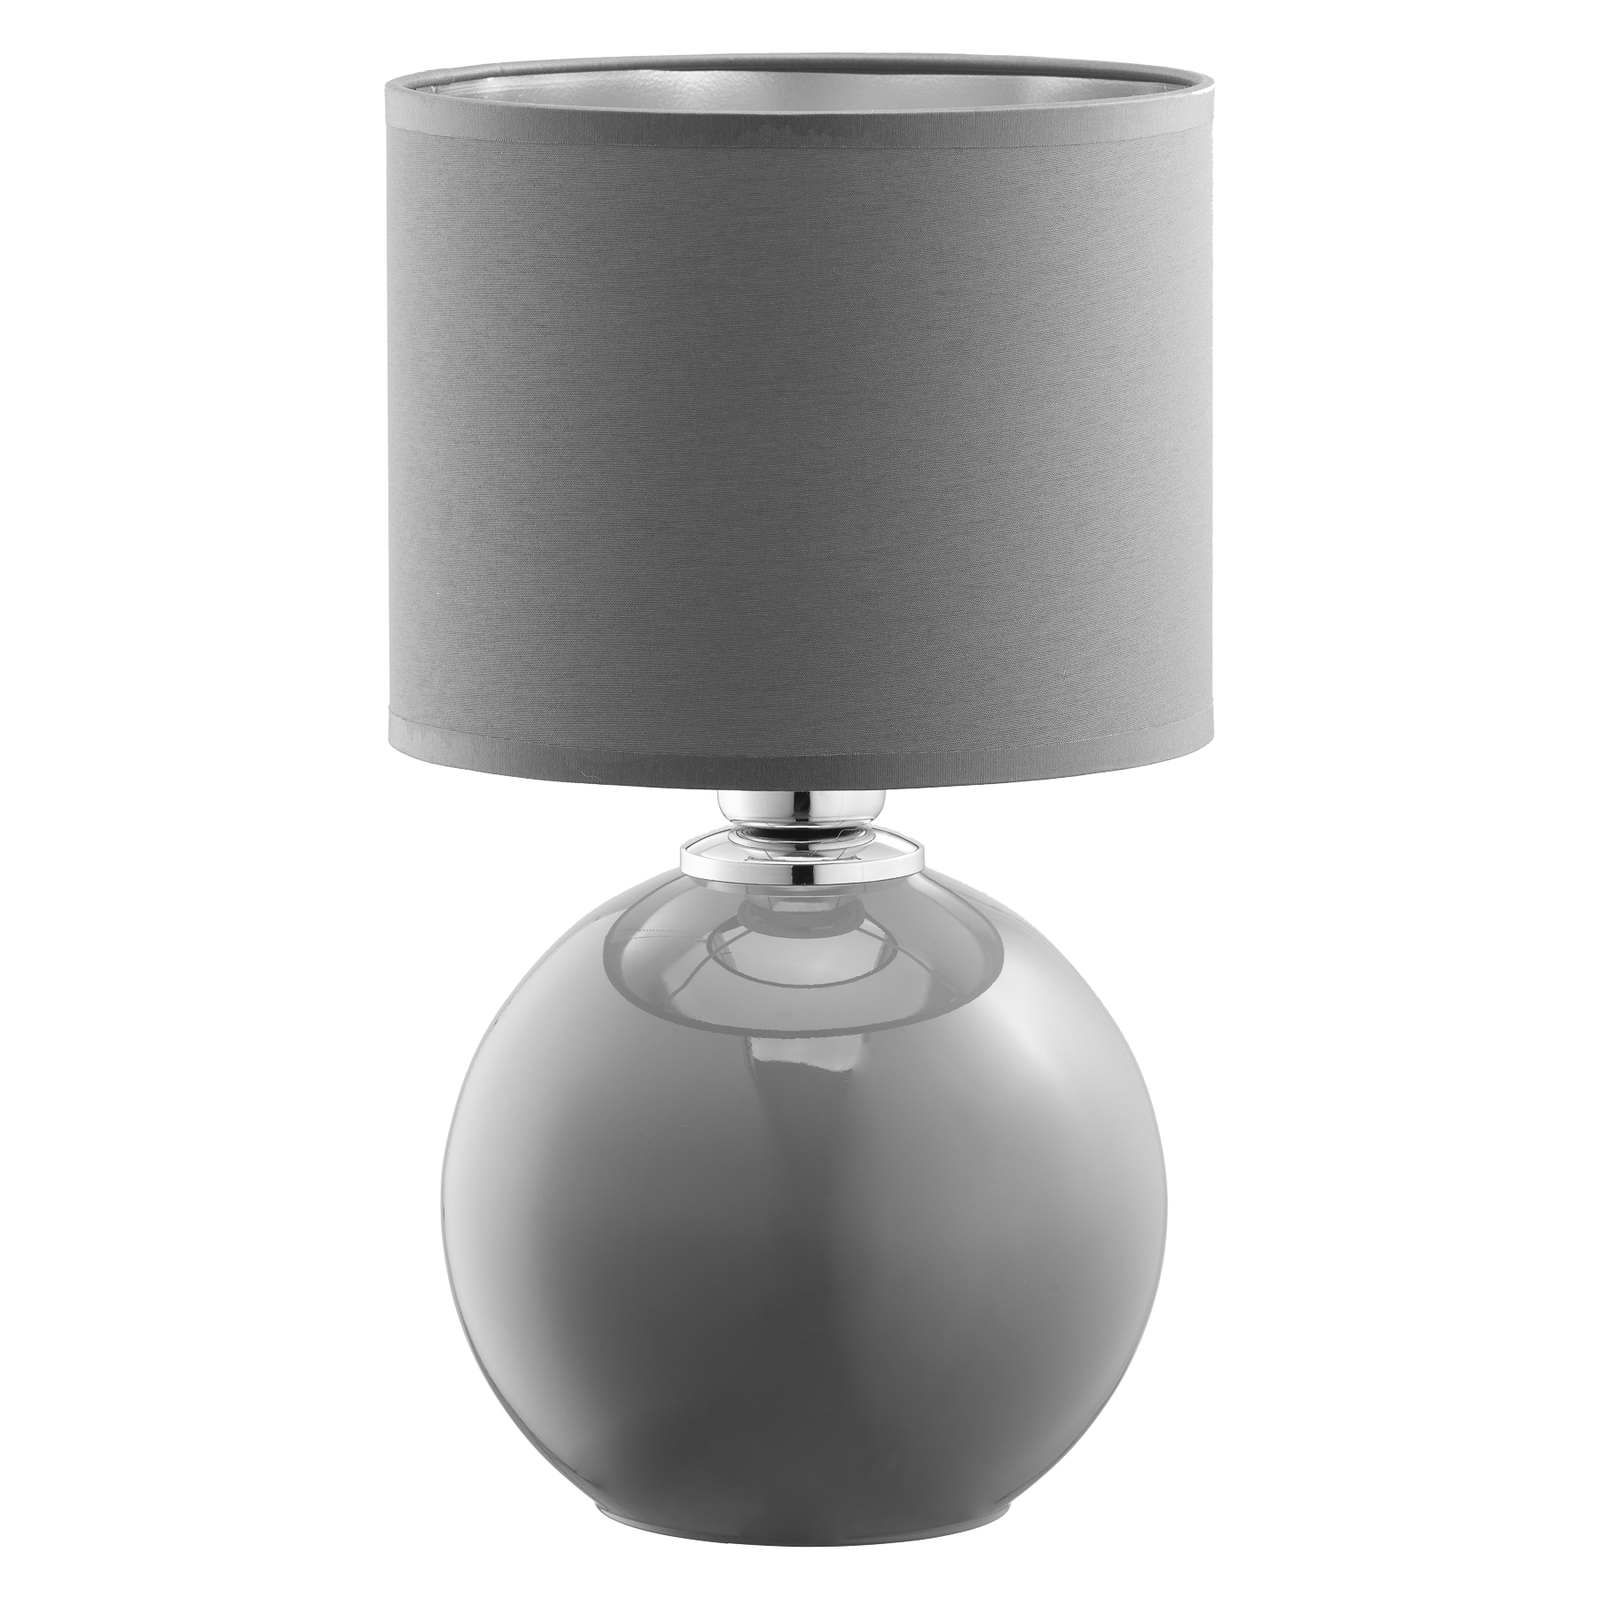 Pöytälamppu Palla, Ø 20 cm, harmaa/grafiitti